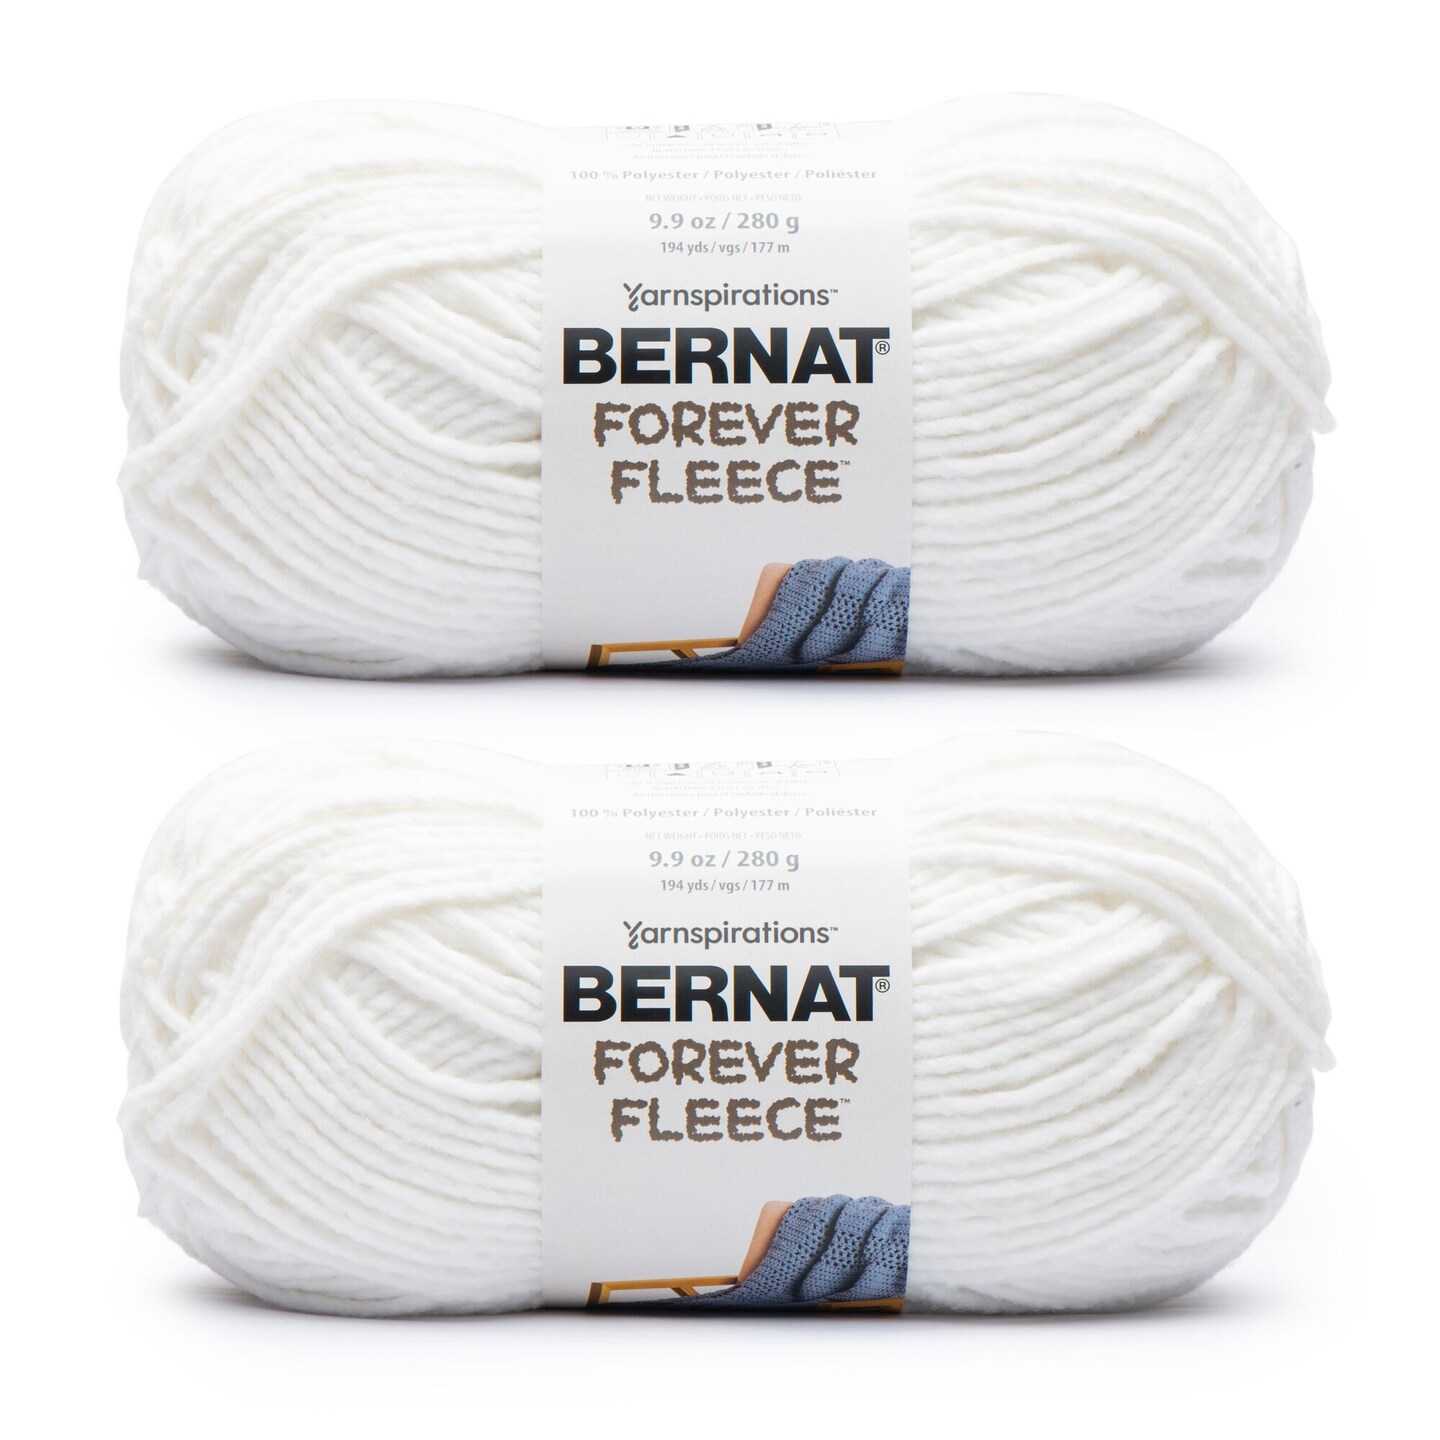 Bernat Forever Fleece White Noise Yarn - 2 Pack of 280g/9.9oz - Polyester -  6 Super Bulky - 194 Yards - Knitting/Crochet